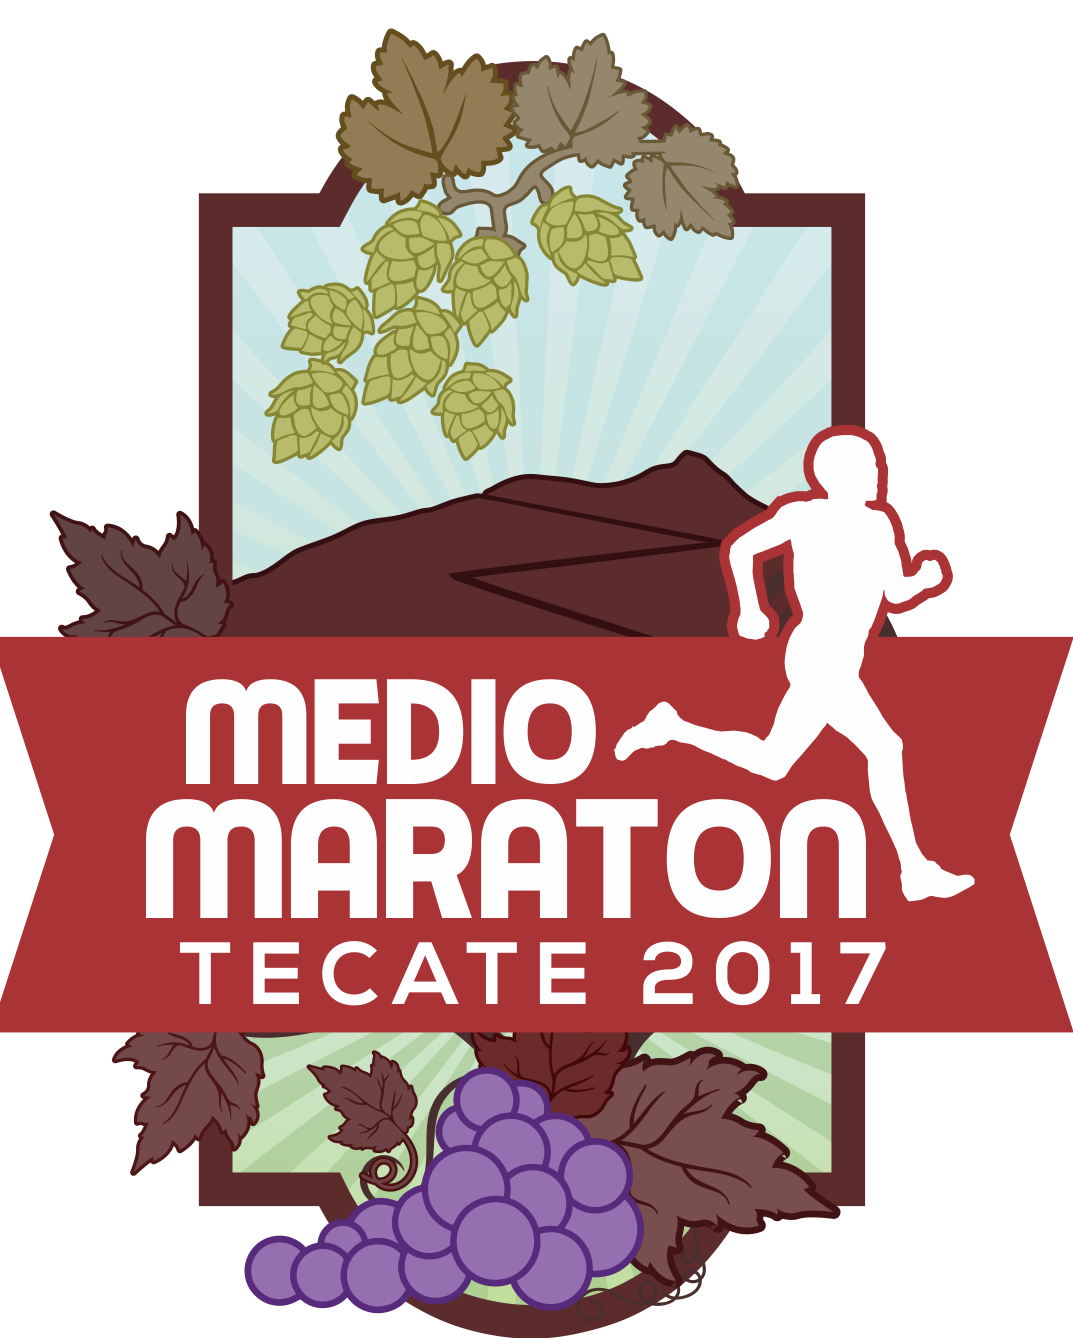 Imdete lanza convocatoria al Medio Maratón Tecate 2017